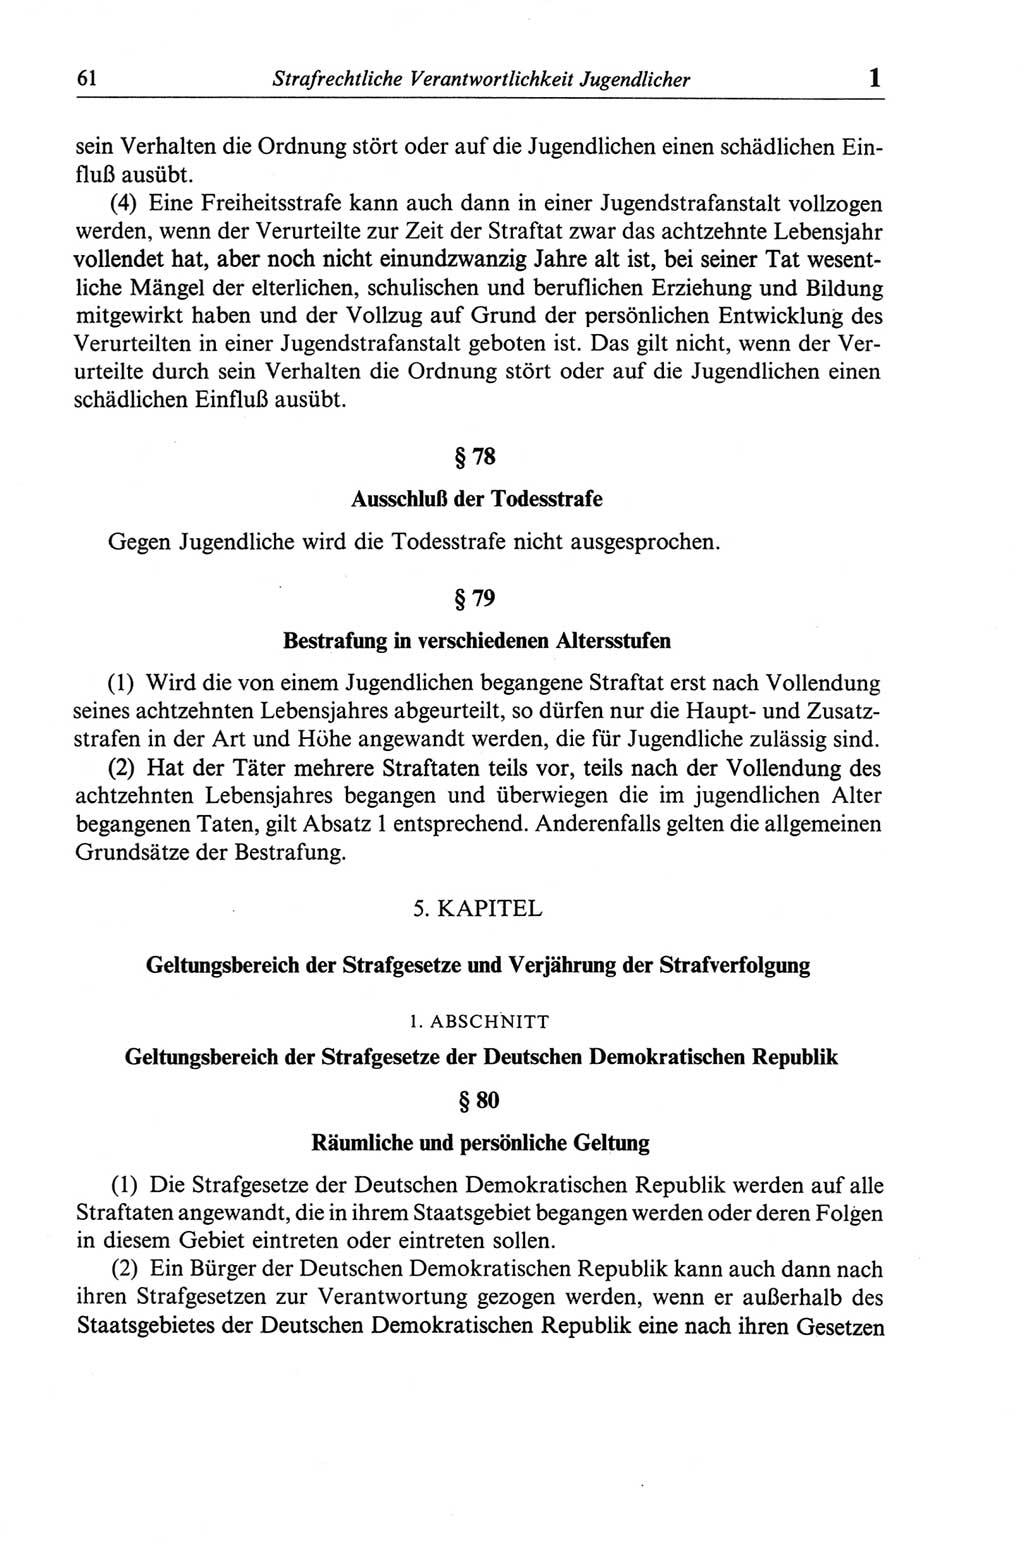 Strafgesetzbuch (StGB) der Deutschen Demokratischen Republik (DDR) und angrenzende Gesetze und Bestimmungen 1968, Seite 61 (StGB Ges. Best. DDR 1968, S. 61)